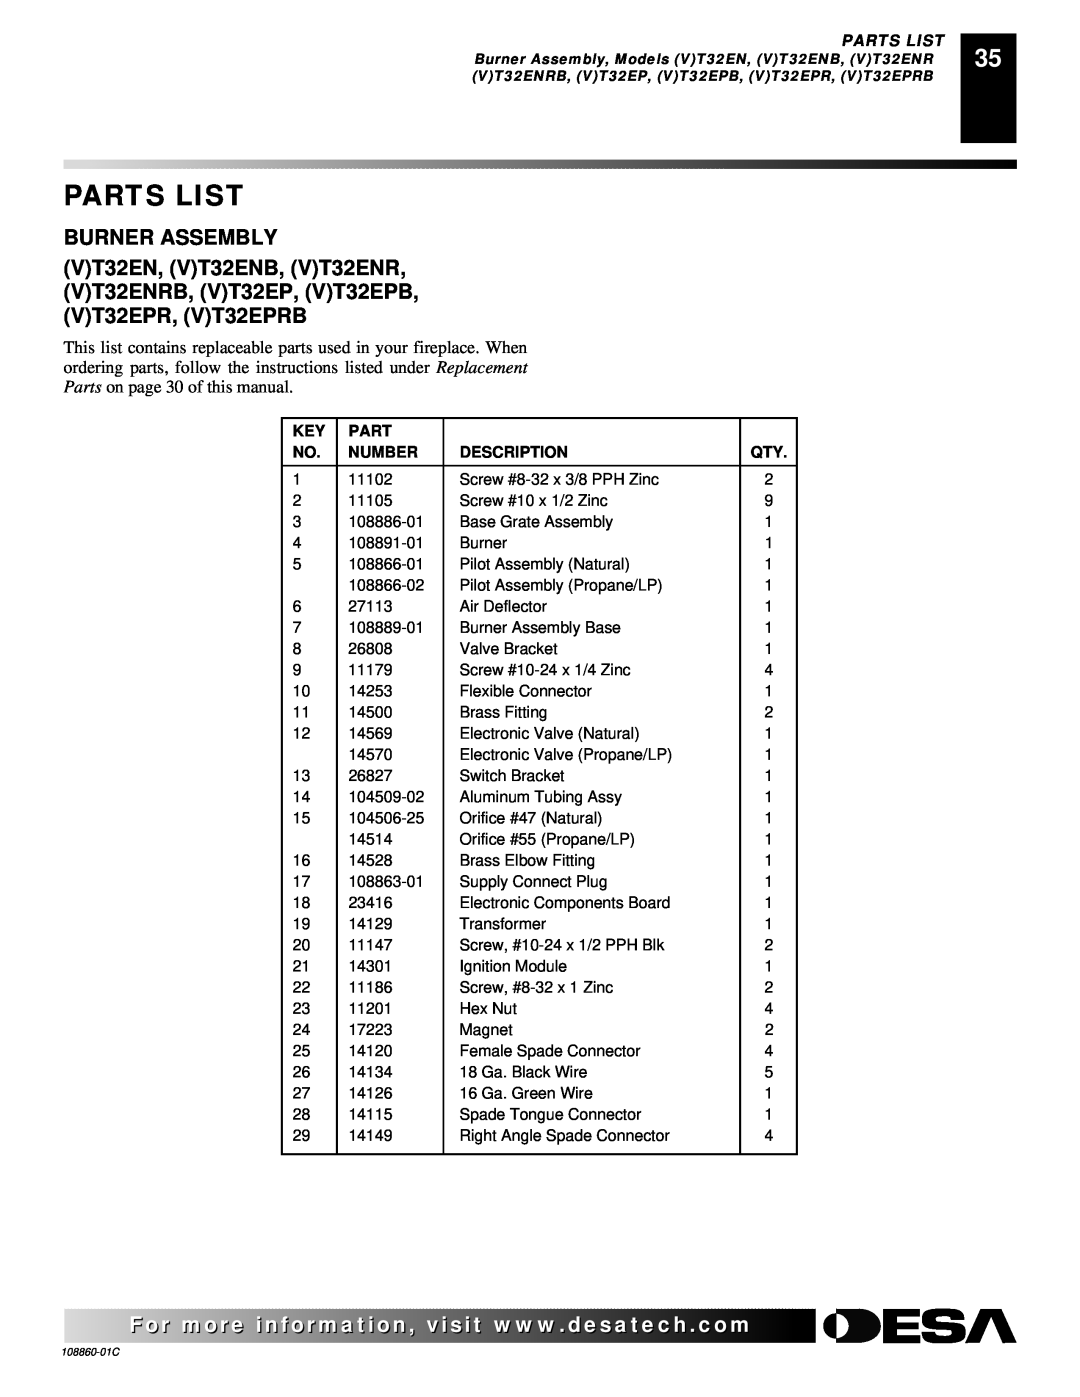 Desa (V)T36EN, (V)T36EP installation manual Parts List, Number, Description 